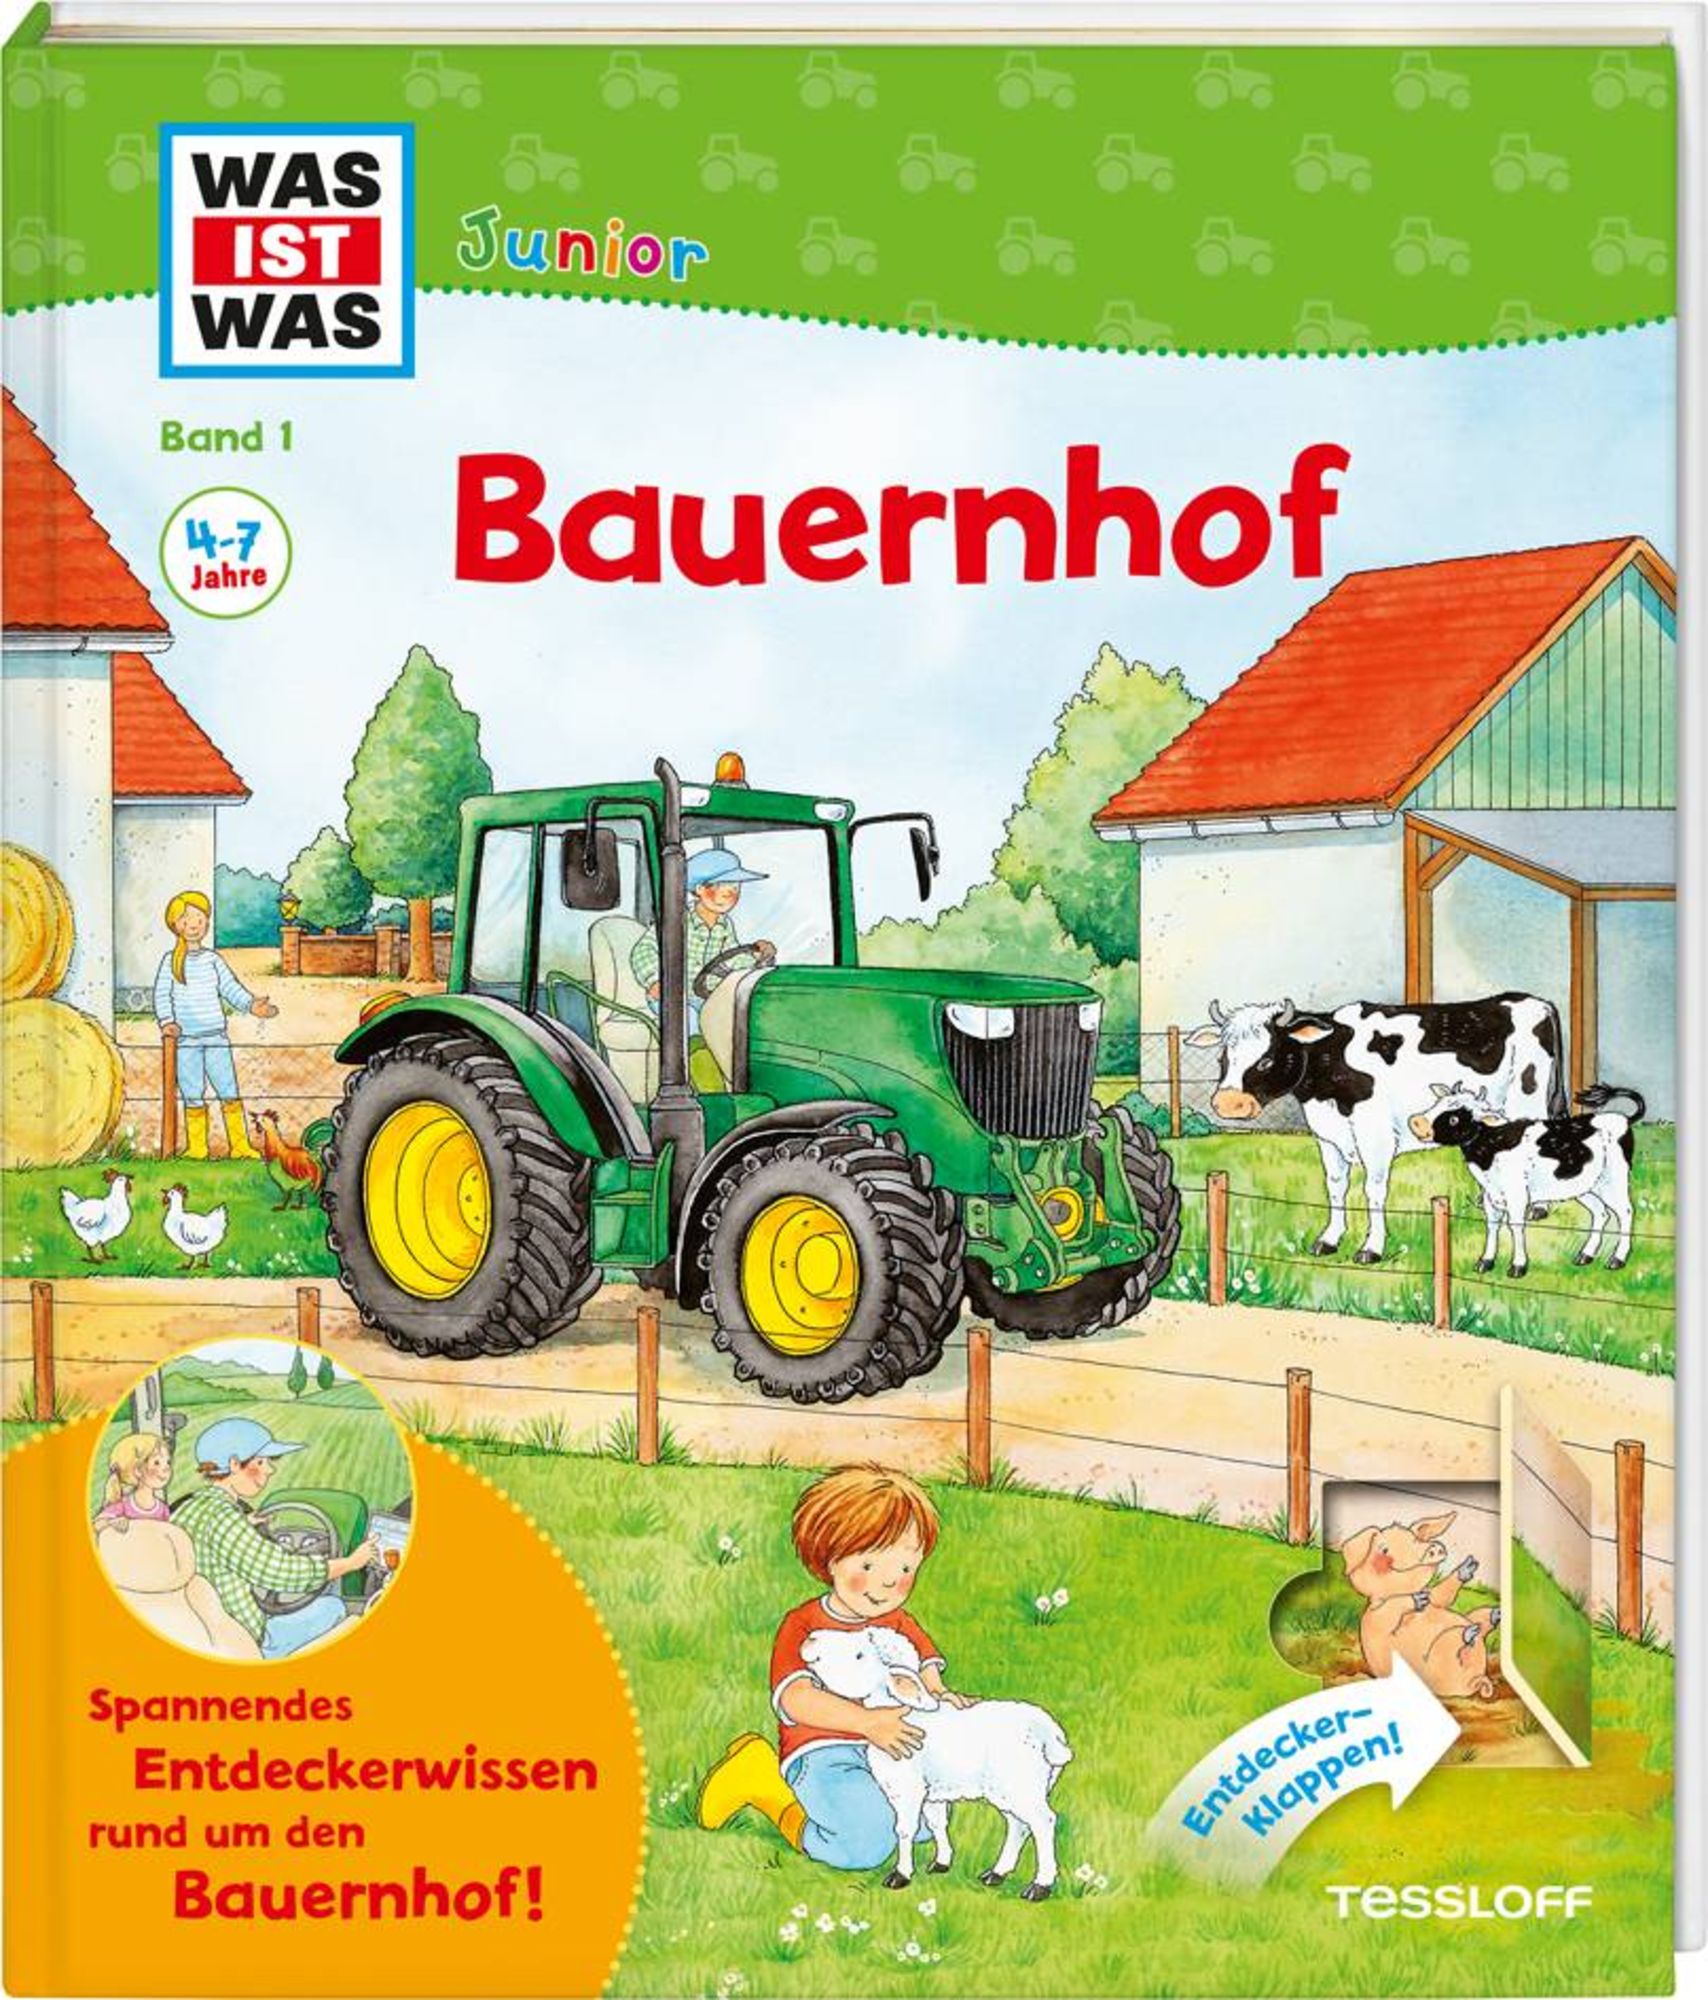 Bauernhof / Was ist was junior Band 1' von 'Christina Braun' - Buch -  '978-3-7886-2200-8